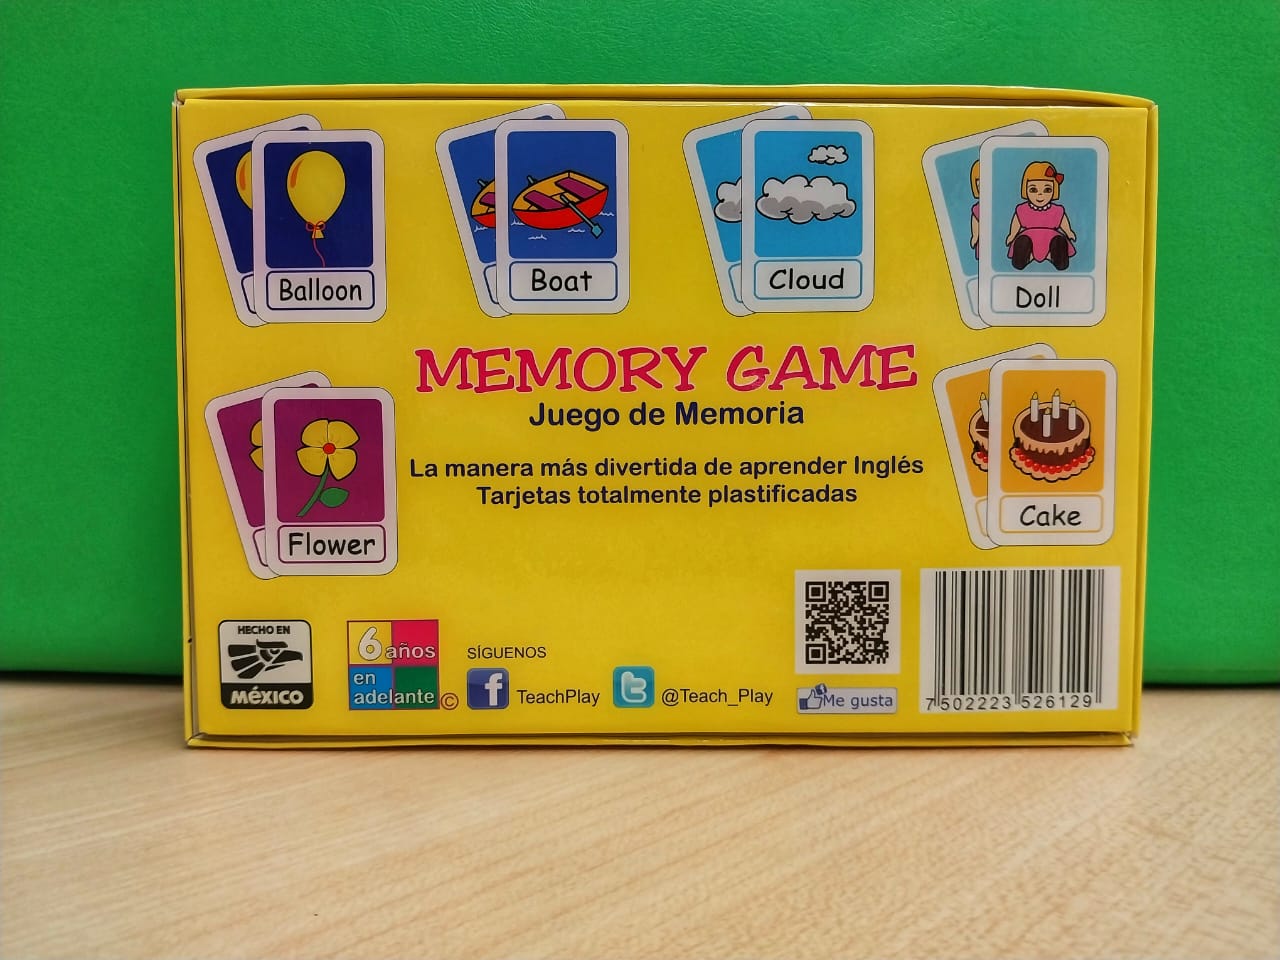 MEMORY GAME JUEGO DE MEMORIA